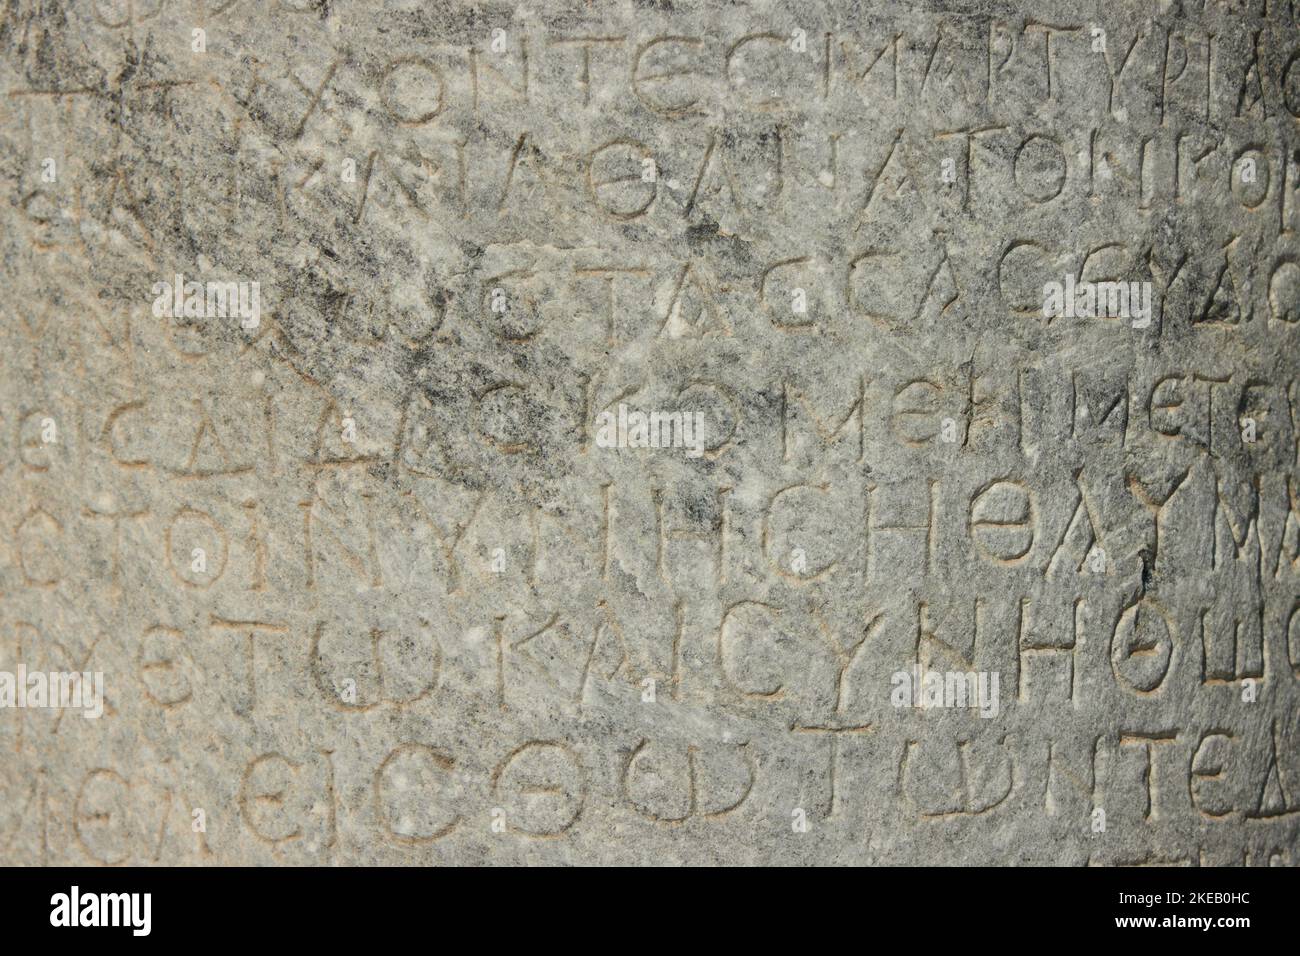 Die antike Inschrift befindet sich auf der antiken Säule oder der Wand. altgriechische Sprache Stockfoto